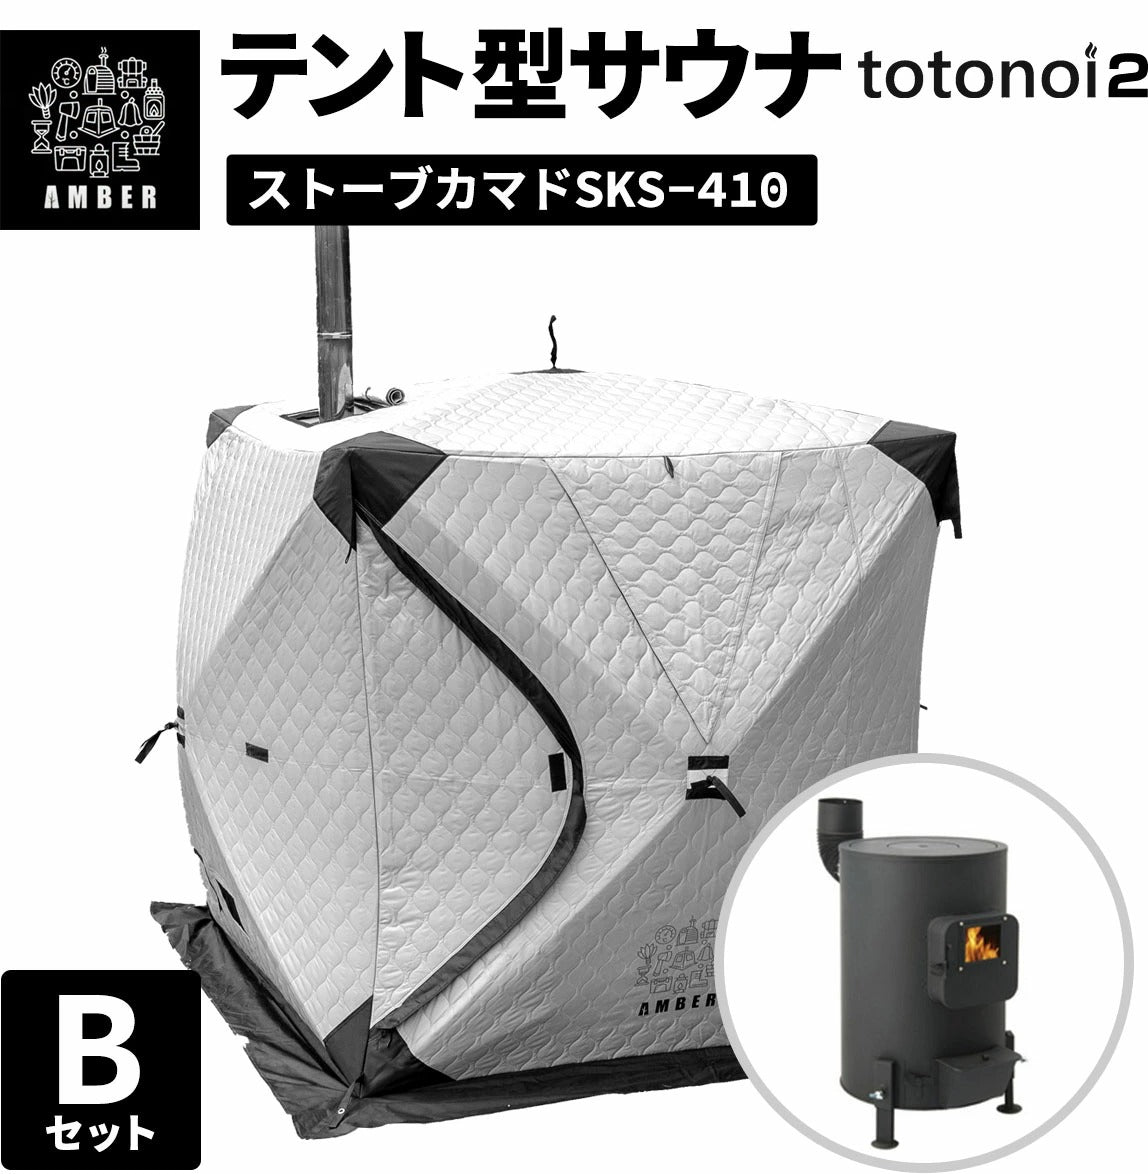 AMBER テント型サウナ totonoi2 (Bセット)